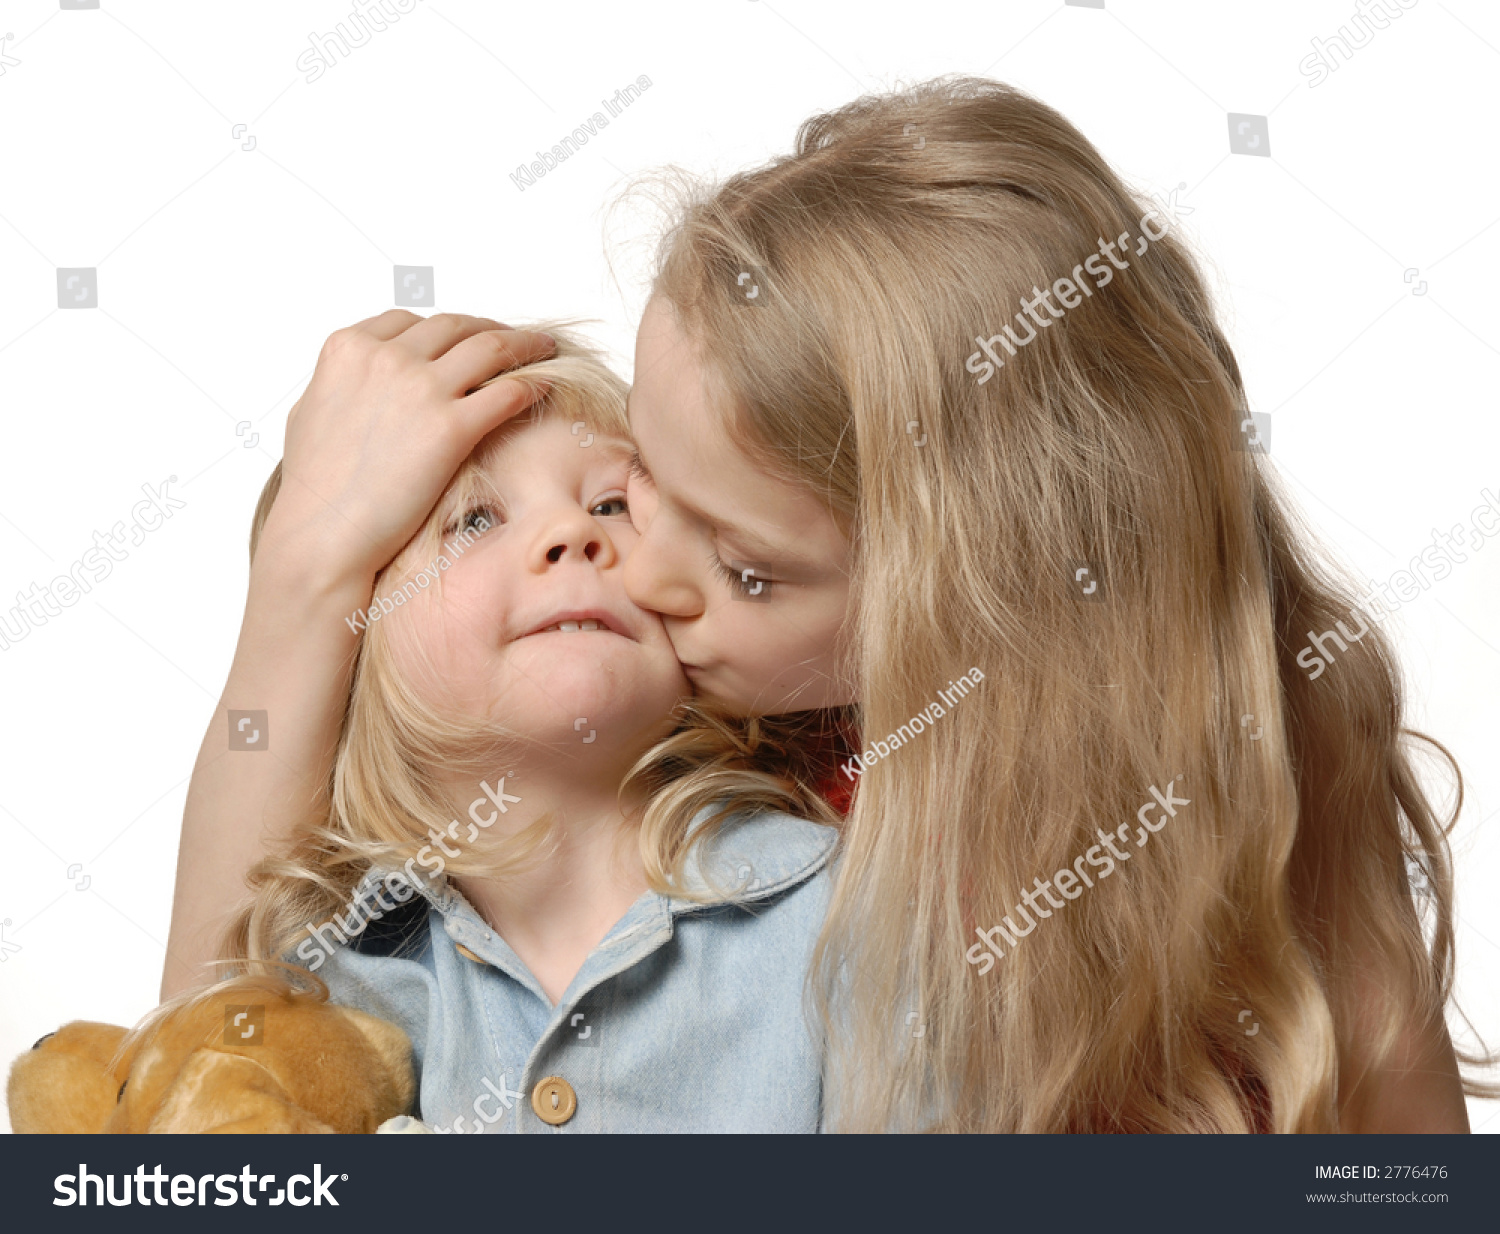 маленькая девочка с маленьким мальчиком порно истории фото 101